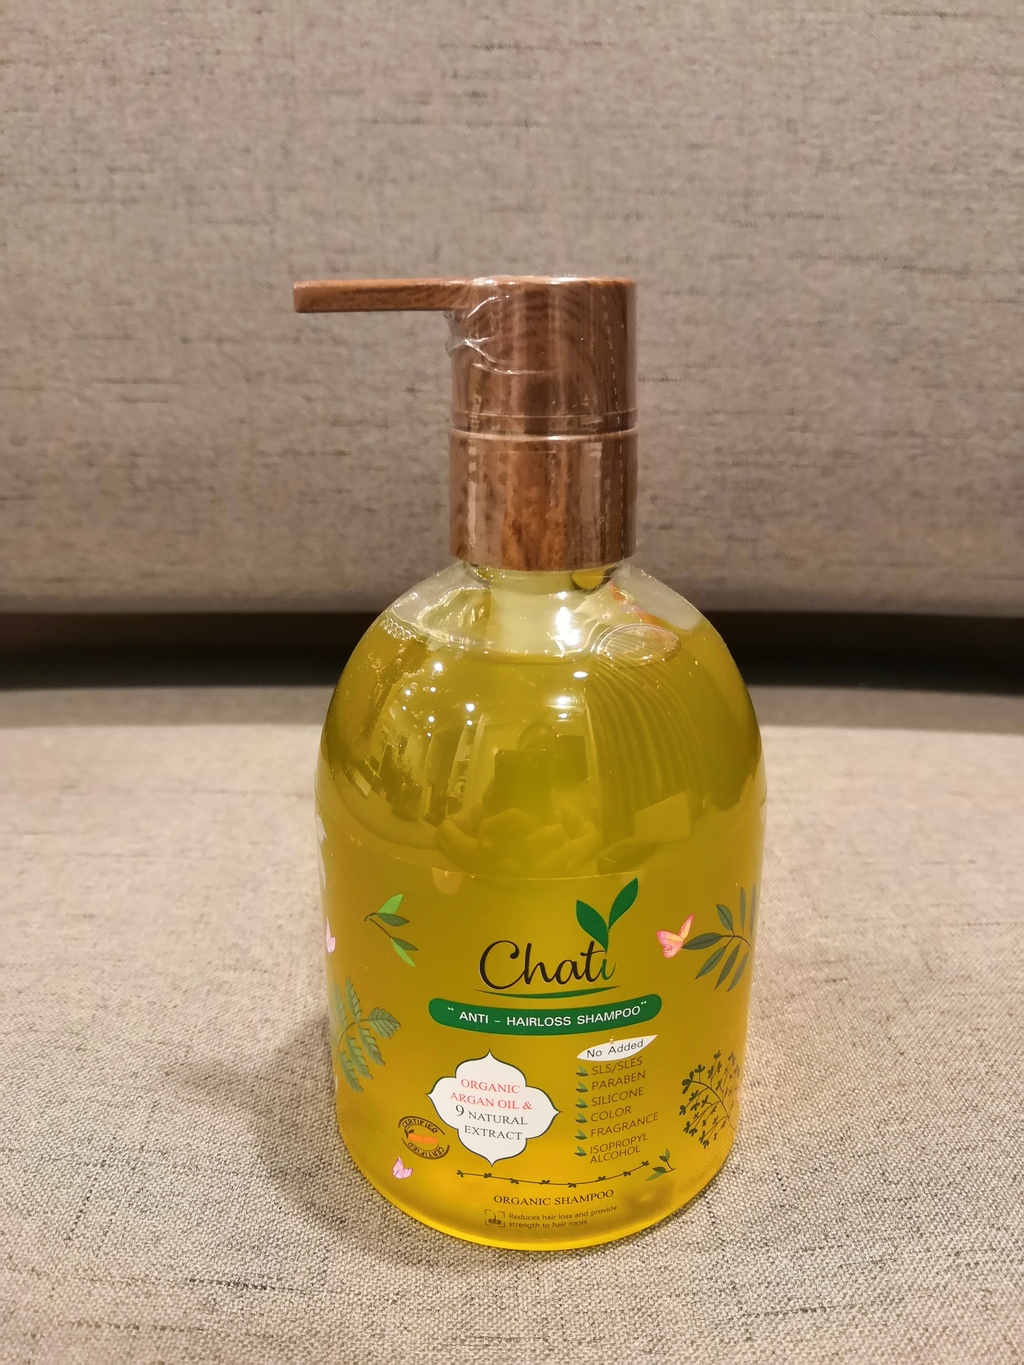 Chati Anti-Hairloss shampoo 300ml ฌาฏิแชมพู ลดผมขาดหลุดร่วง